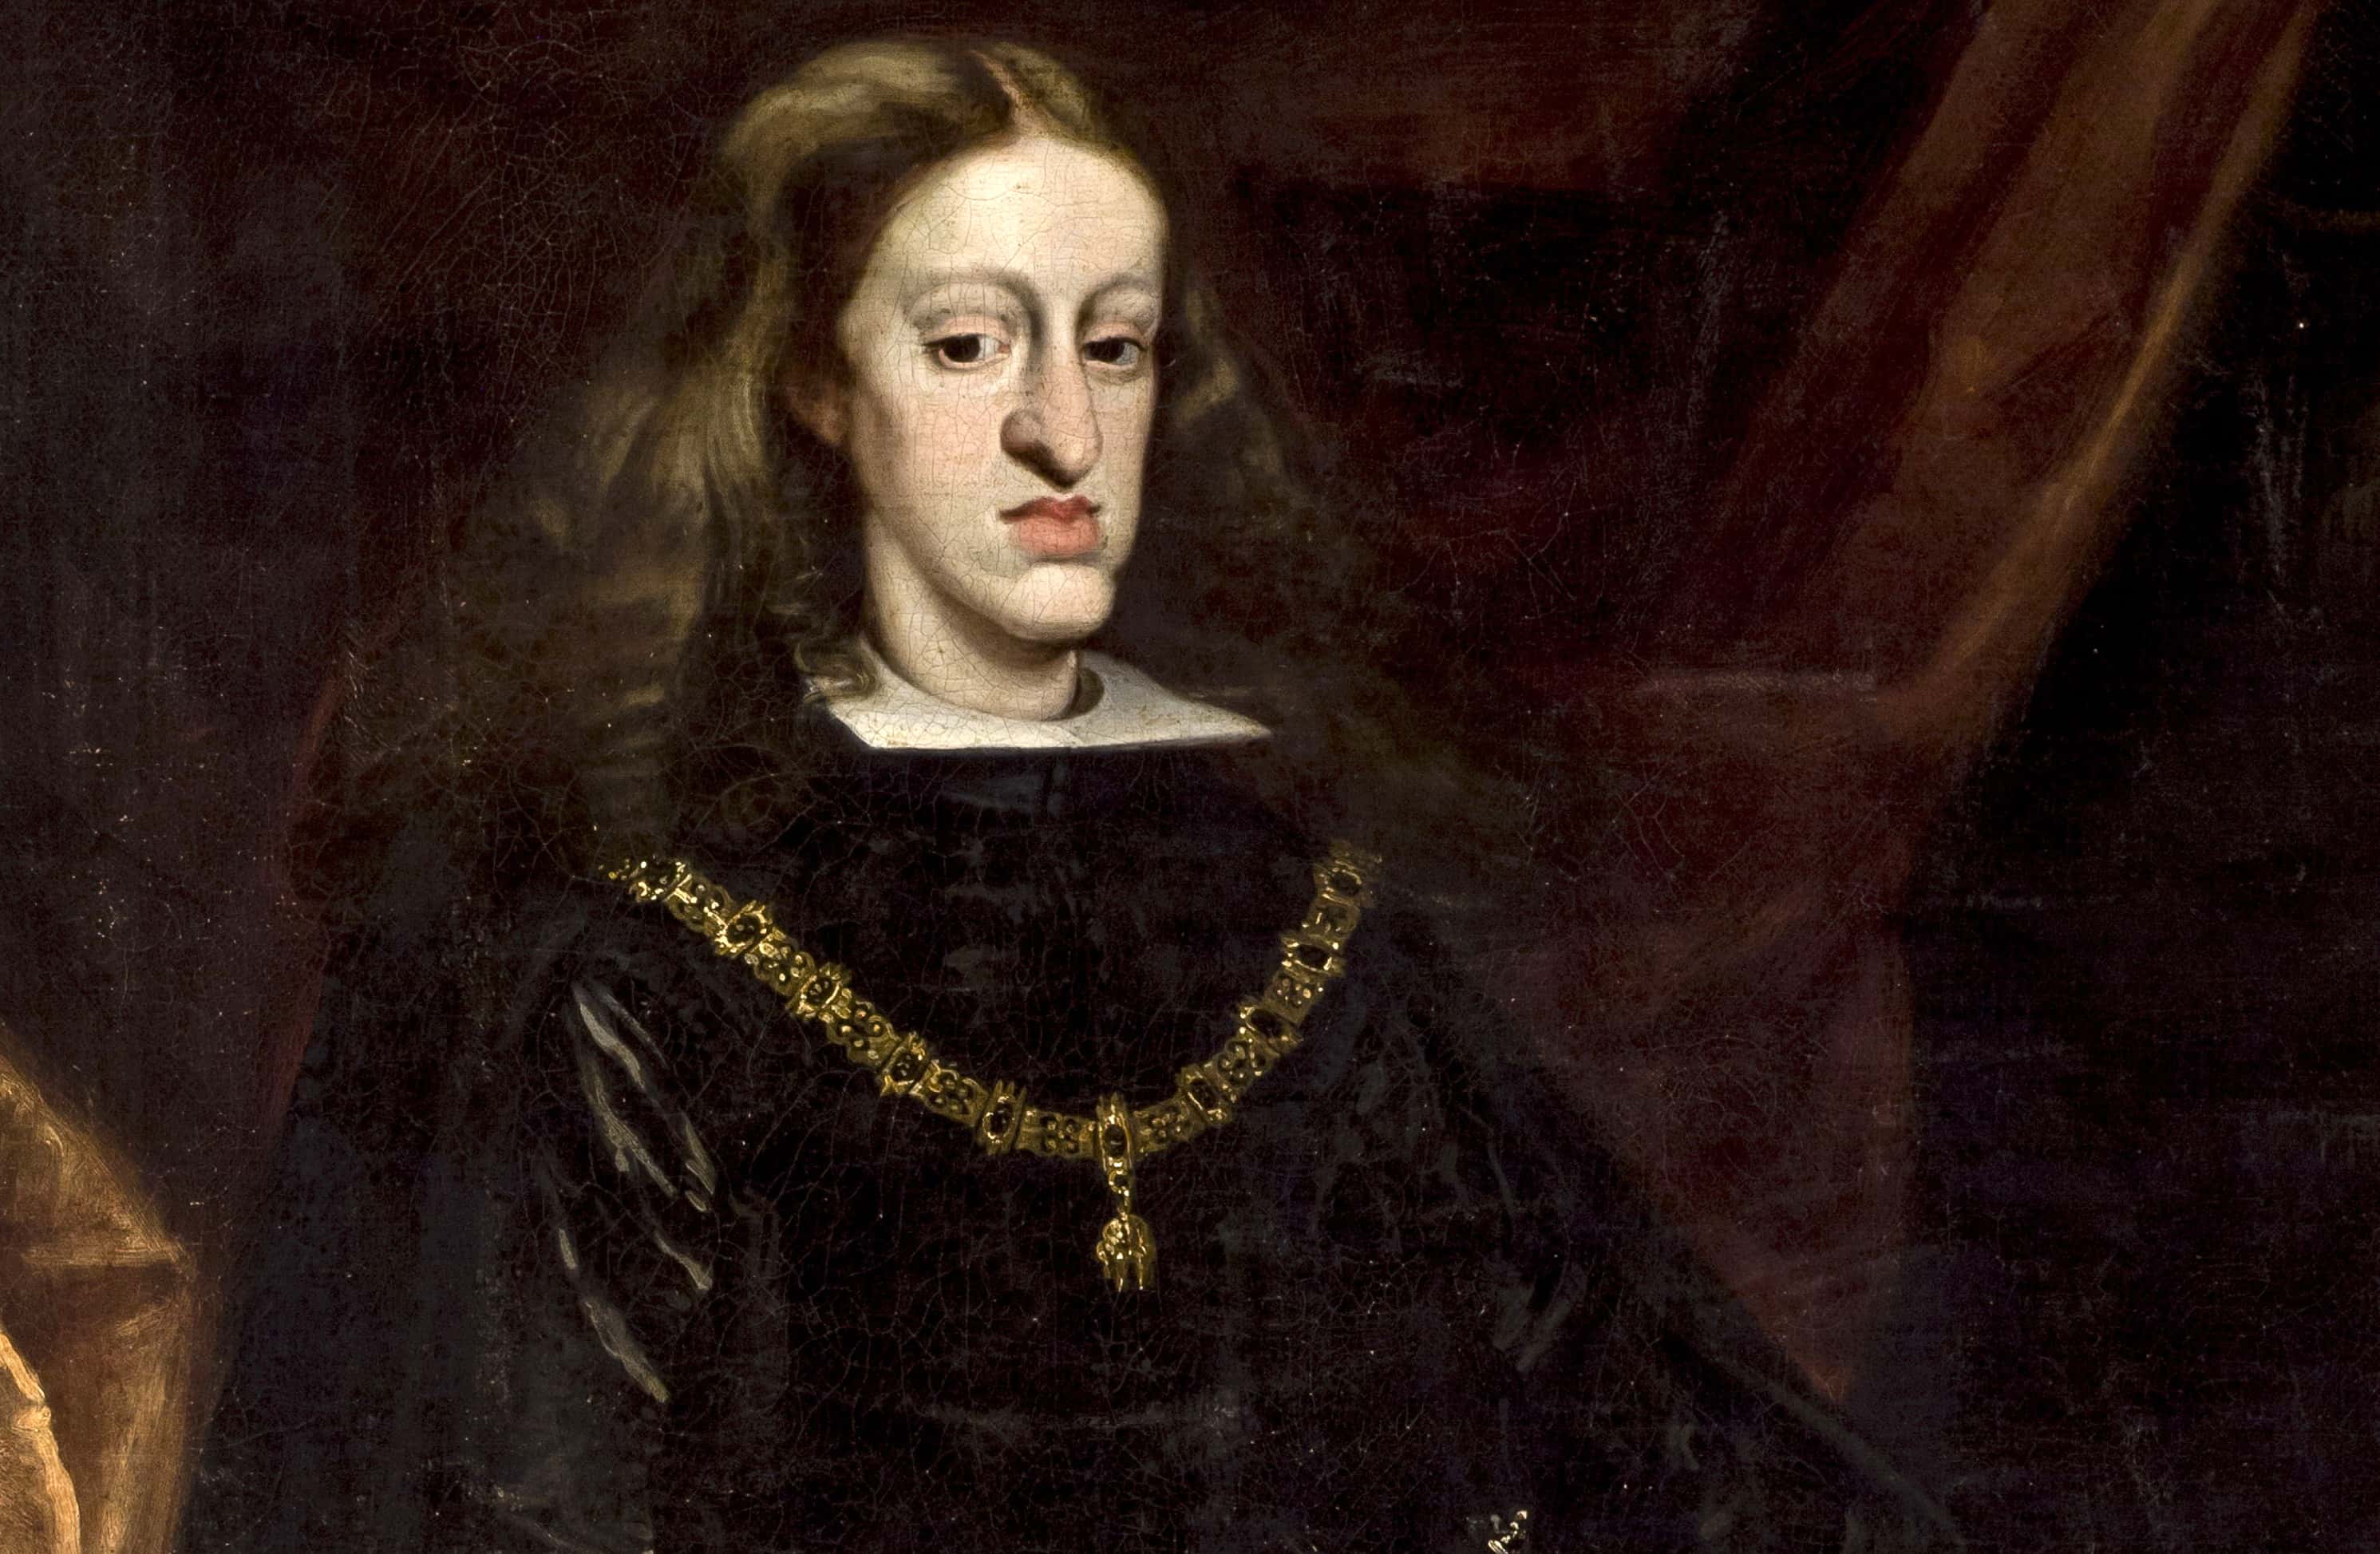 Габсбурги википедия. Династия Габсбургов портреты. Последний Король Испании из династии Габсбургов.